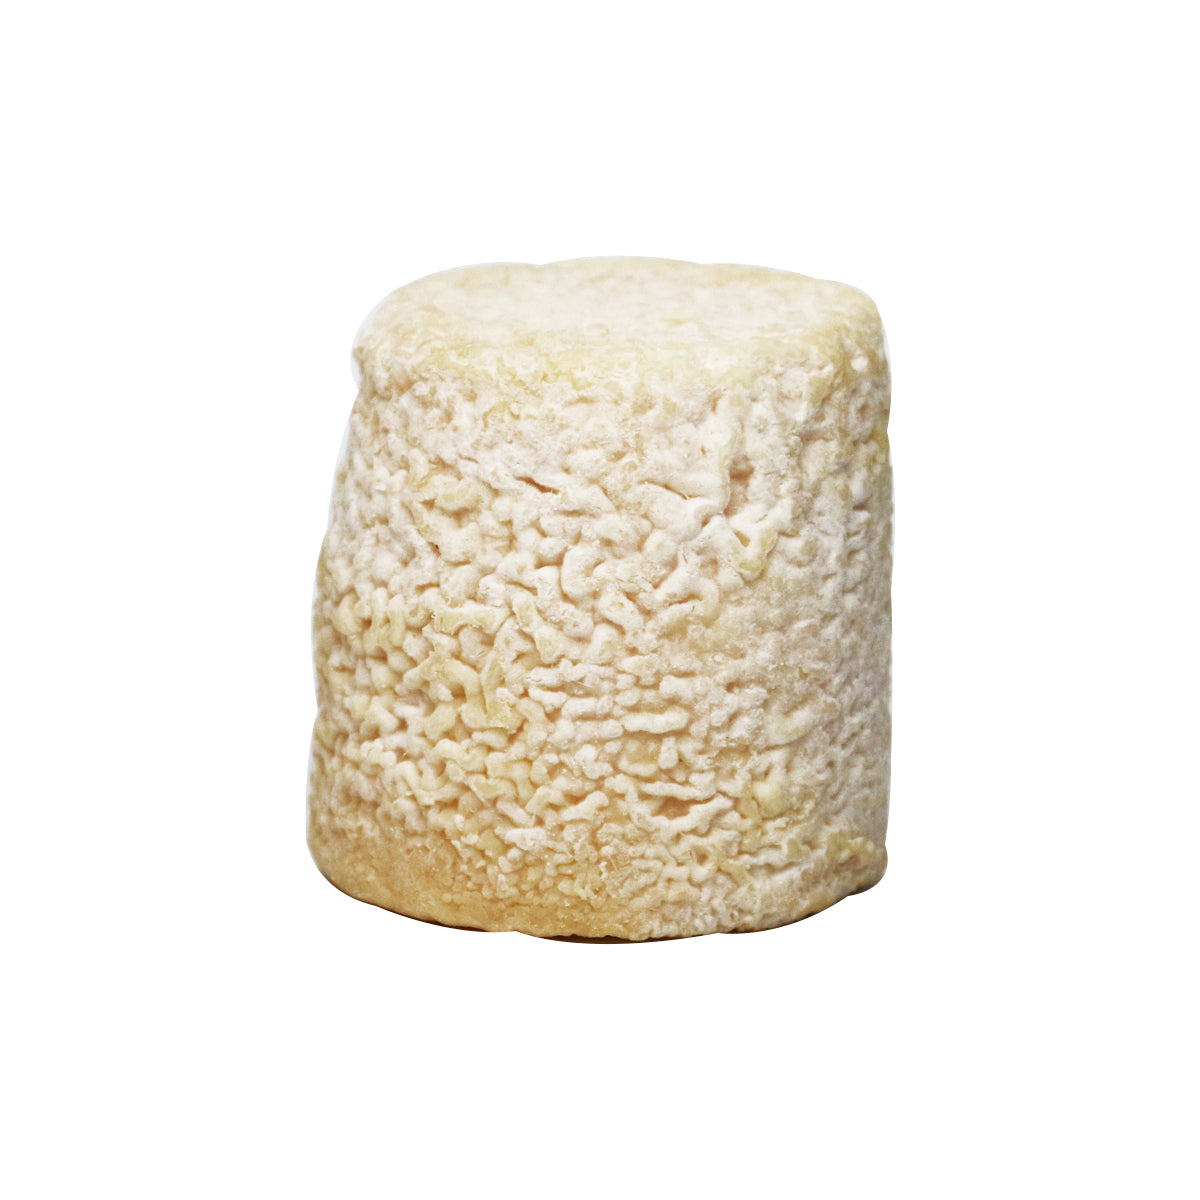 Murray'S Cheese Chabichou Du Poitou Cheese